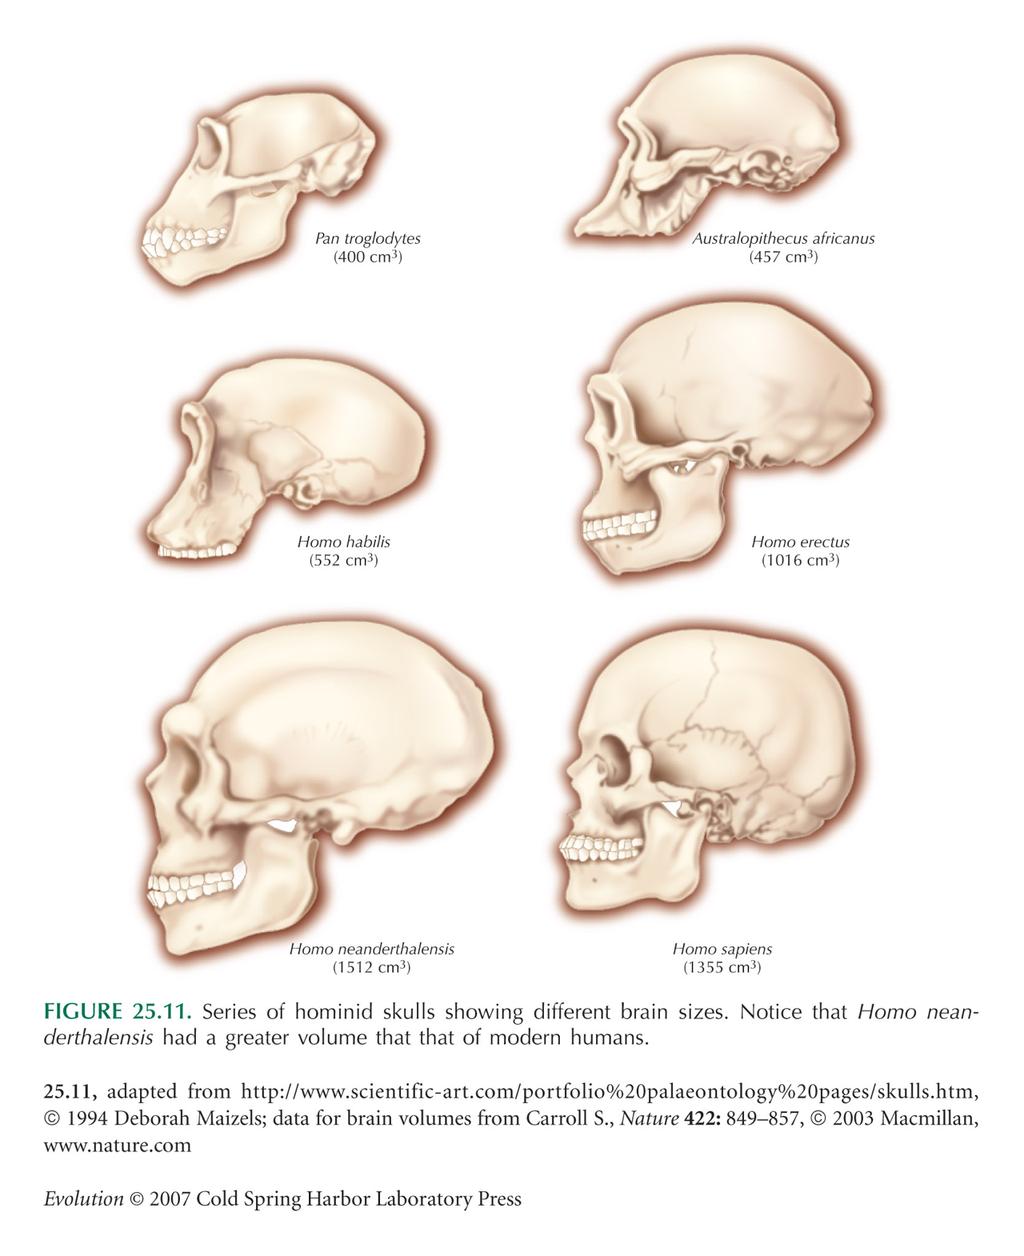 EVOLUTION OF CRANIAL CAPACITY Australopithecus africanus 457 cm3 Homo habilis